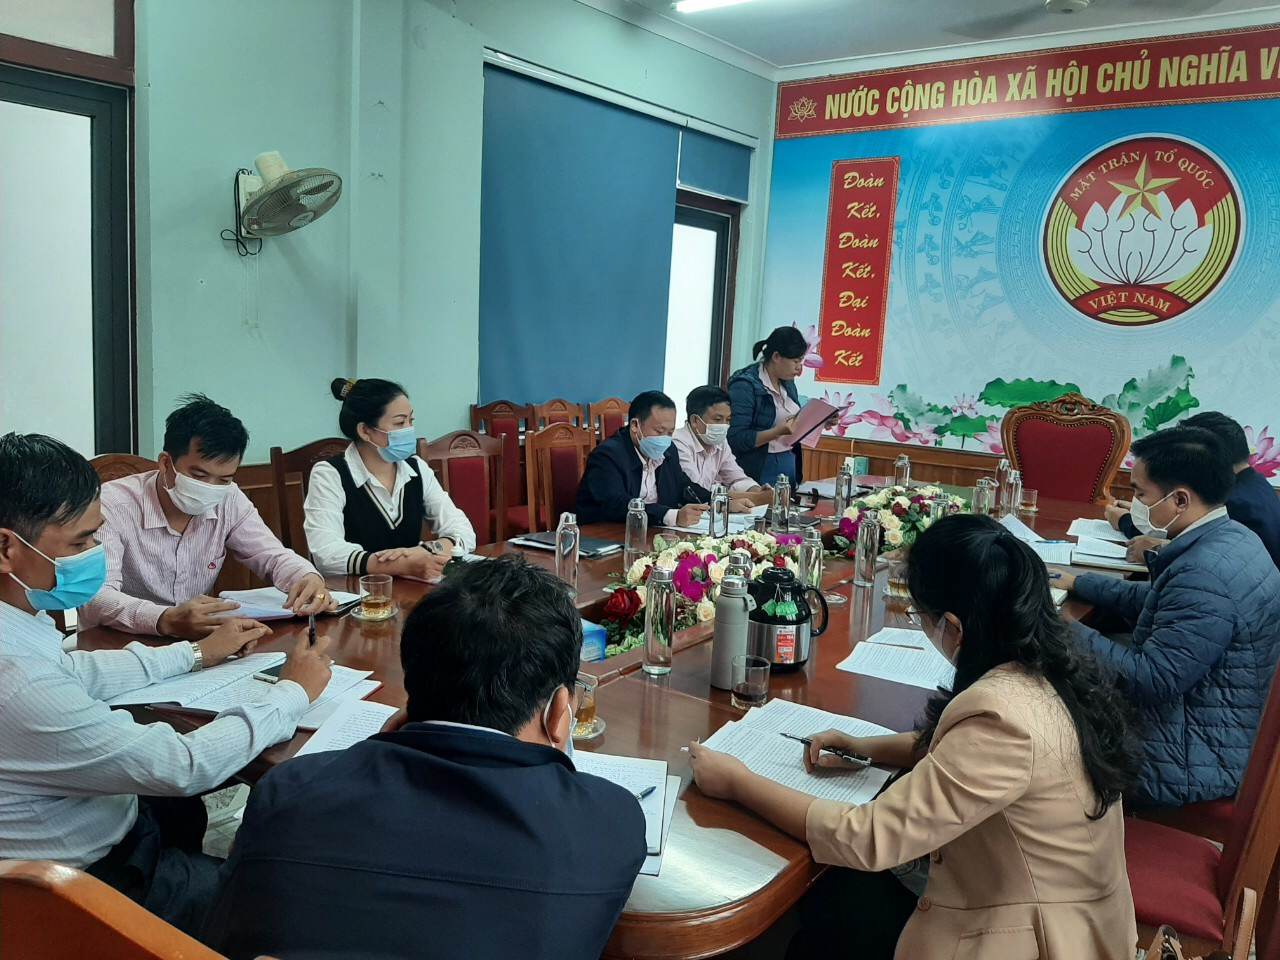 Toàn cảnh nghị giao ban định kỳ giữa Ngân hàng Chính sách xã hội thị xã Ba Đồn với các tổ chức chính trị xã hội nhận ủy thác.